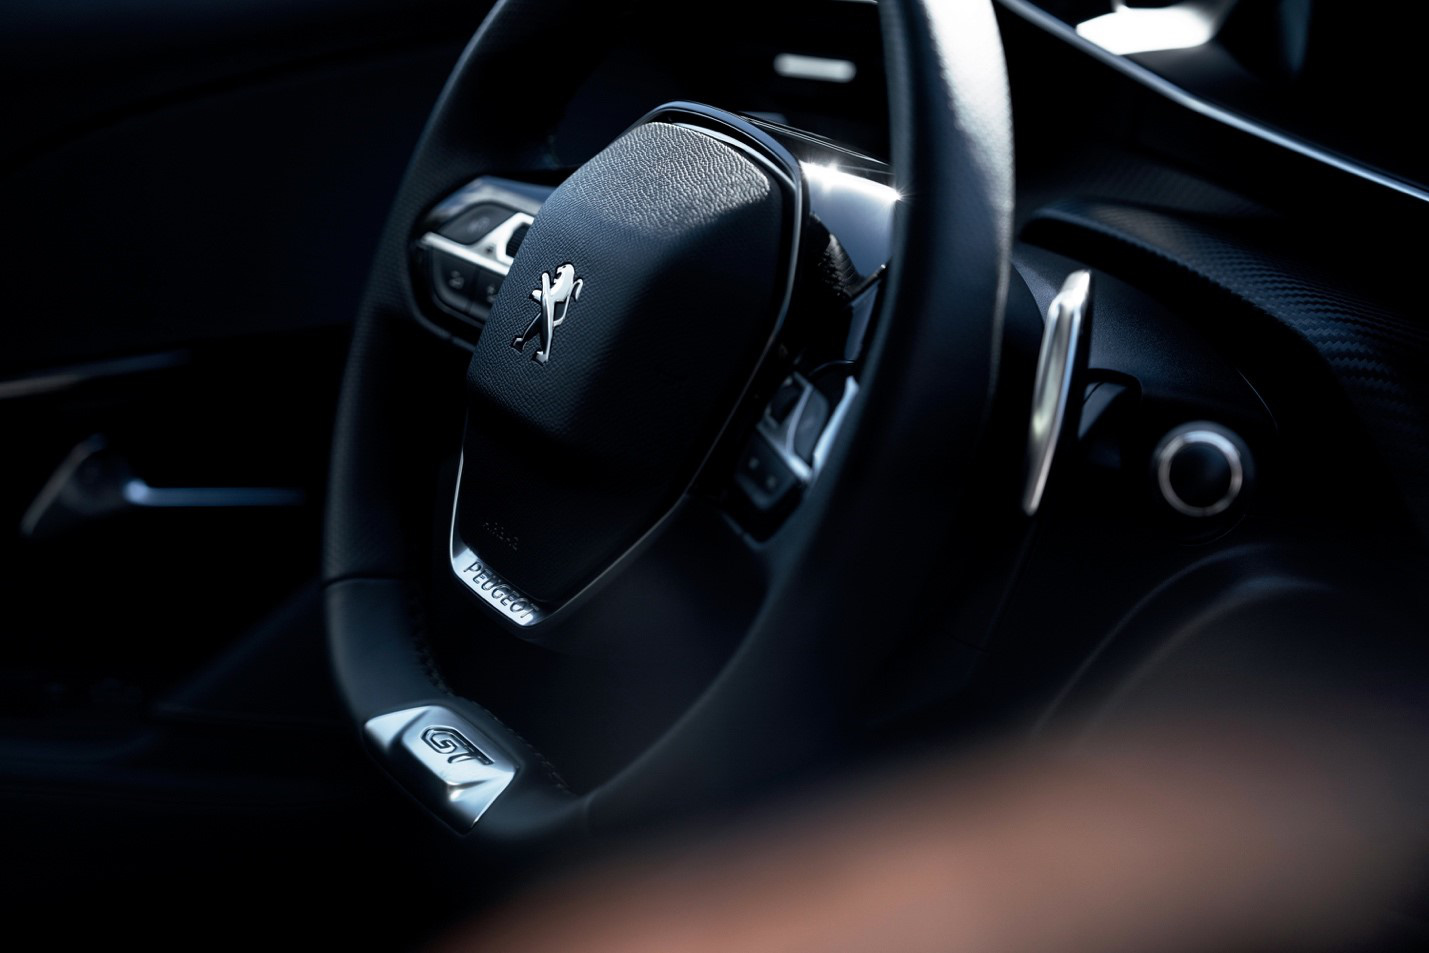 Vô-lăng D-cut: Điểm nhấn thiết kế riêng biệt của Peugeot - Ảnh 1.